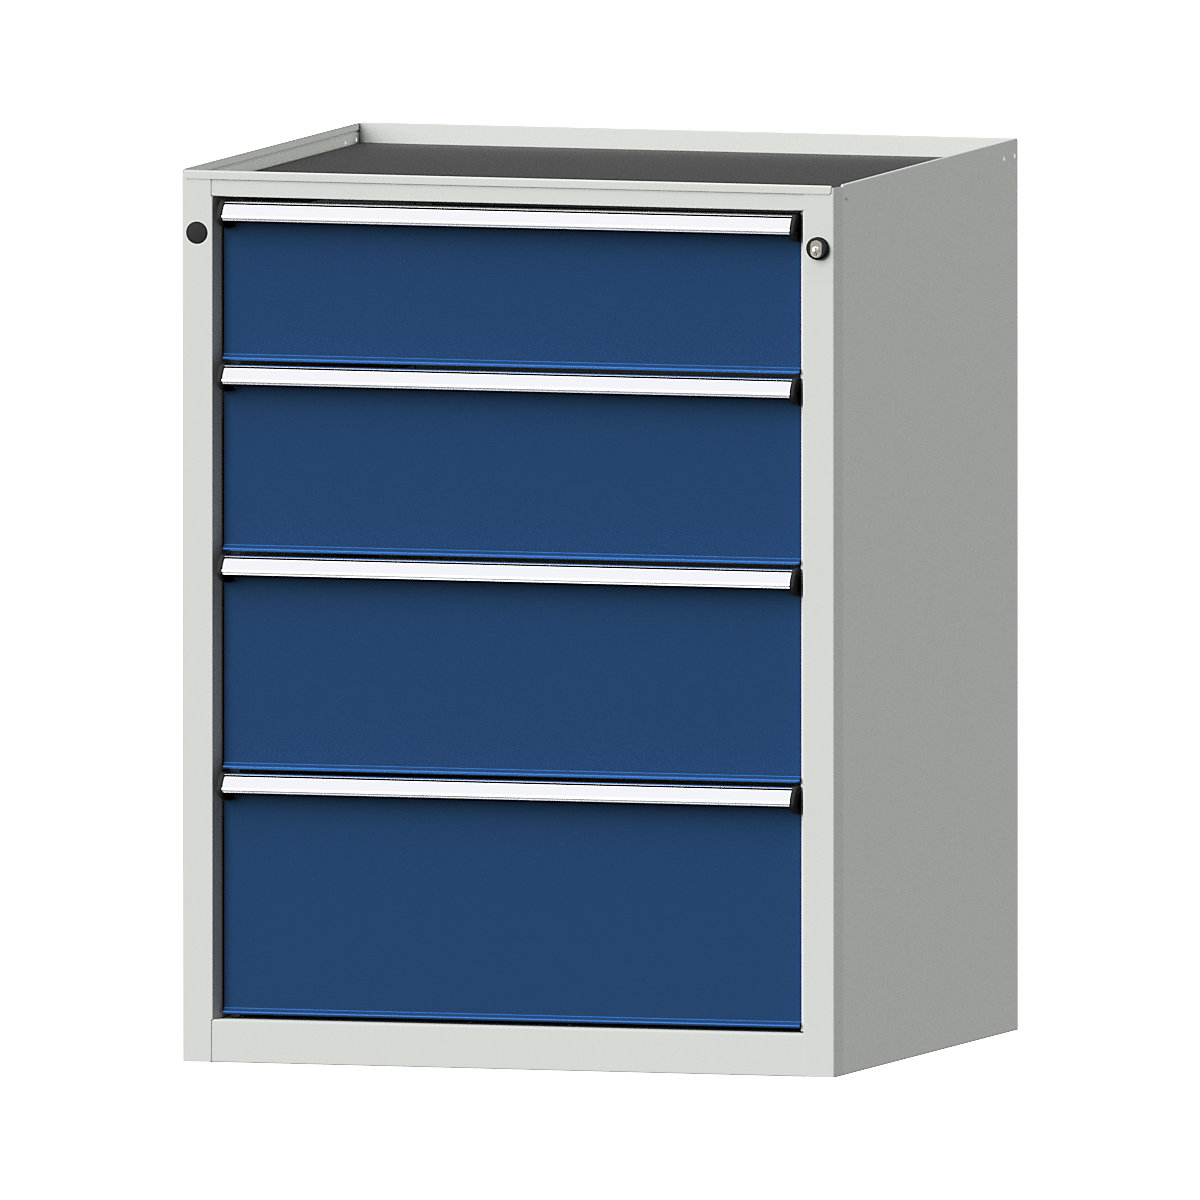 Zásuvková skříň – ANKE, š x h 760 x 675 mm, nosnost zásuvky 200 kg, 4 zásuvky, výška 980 mm, čelo hořcově modré